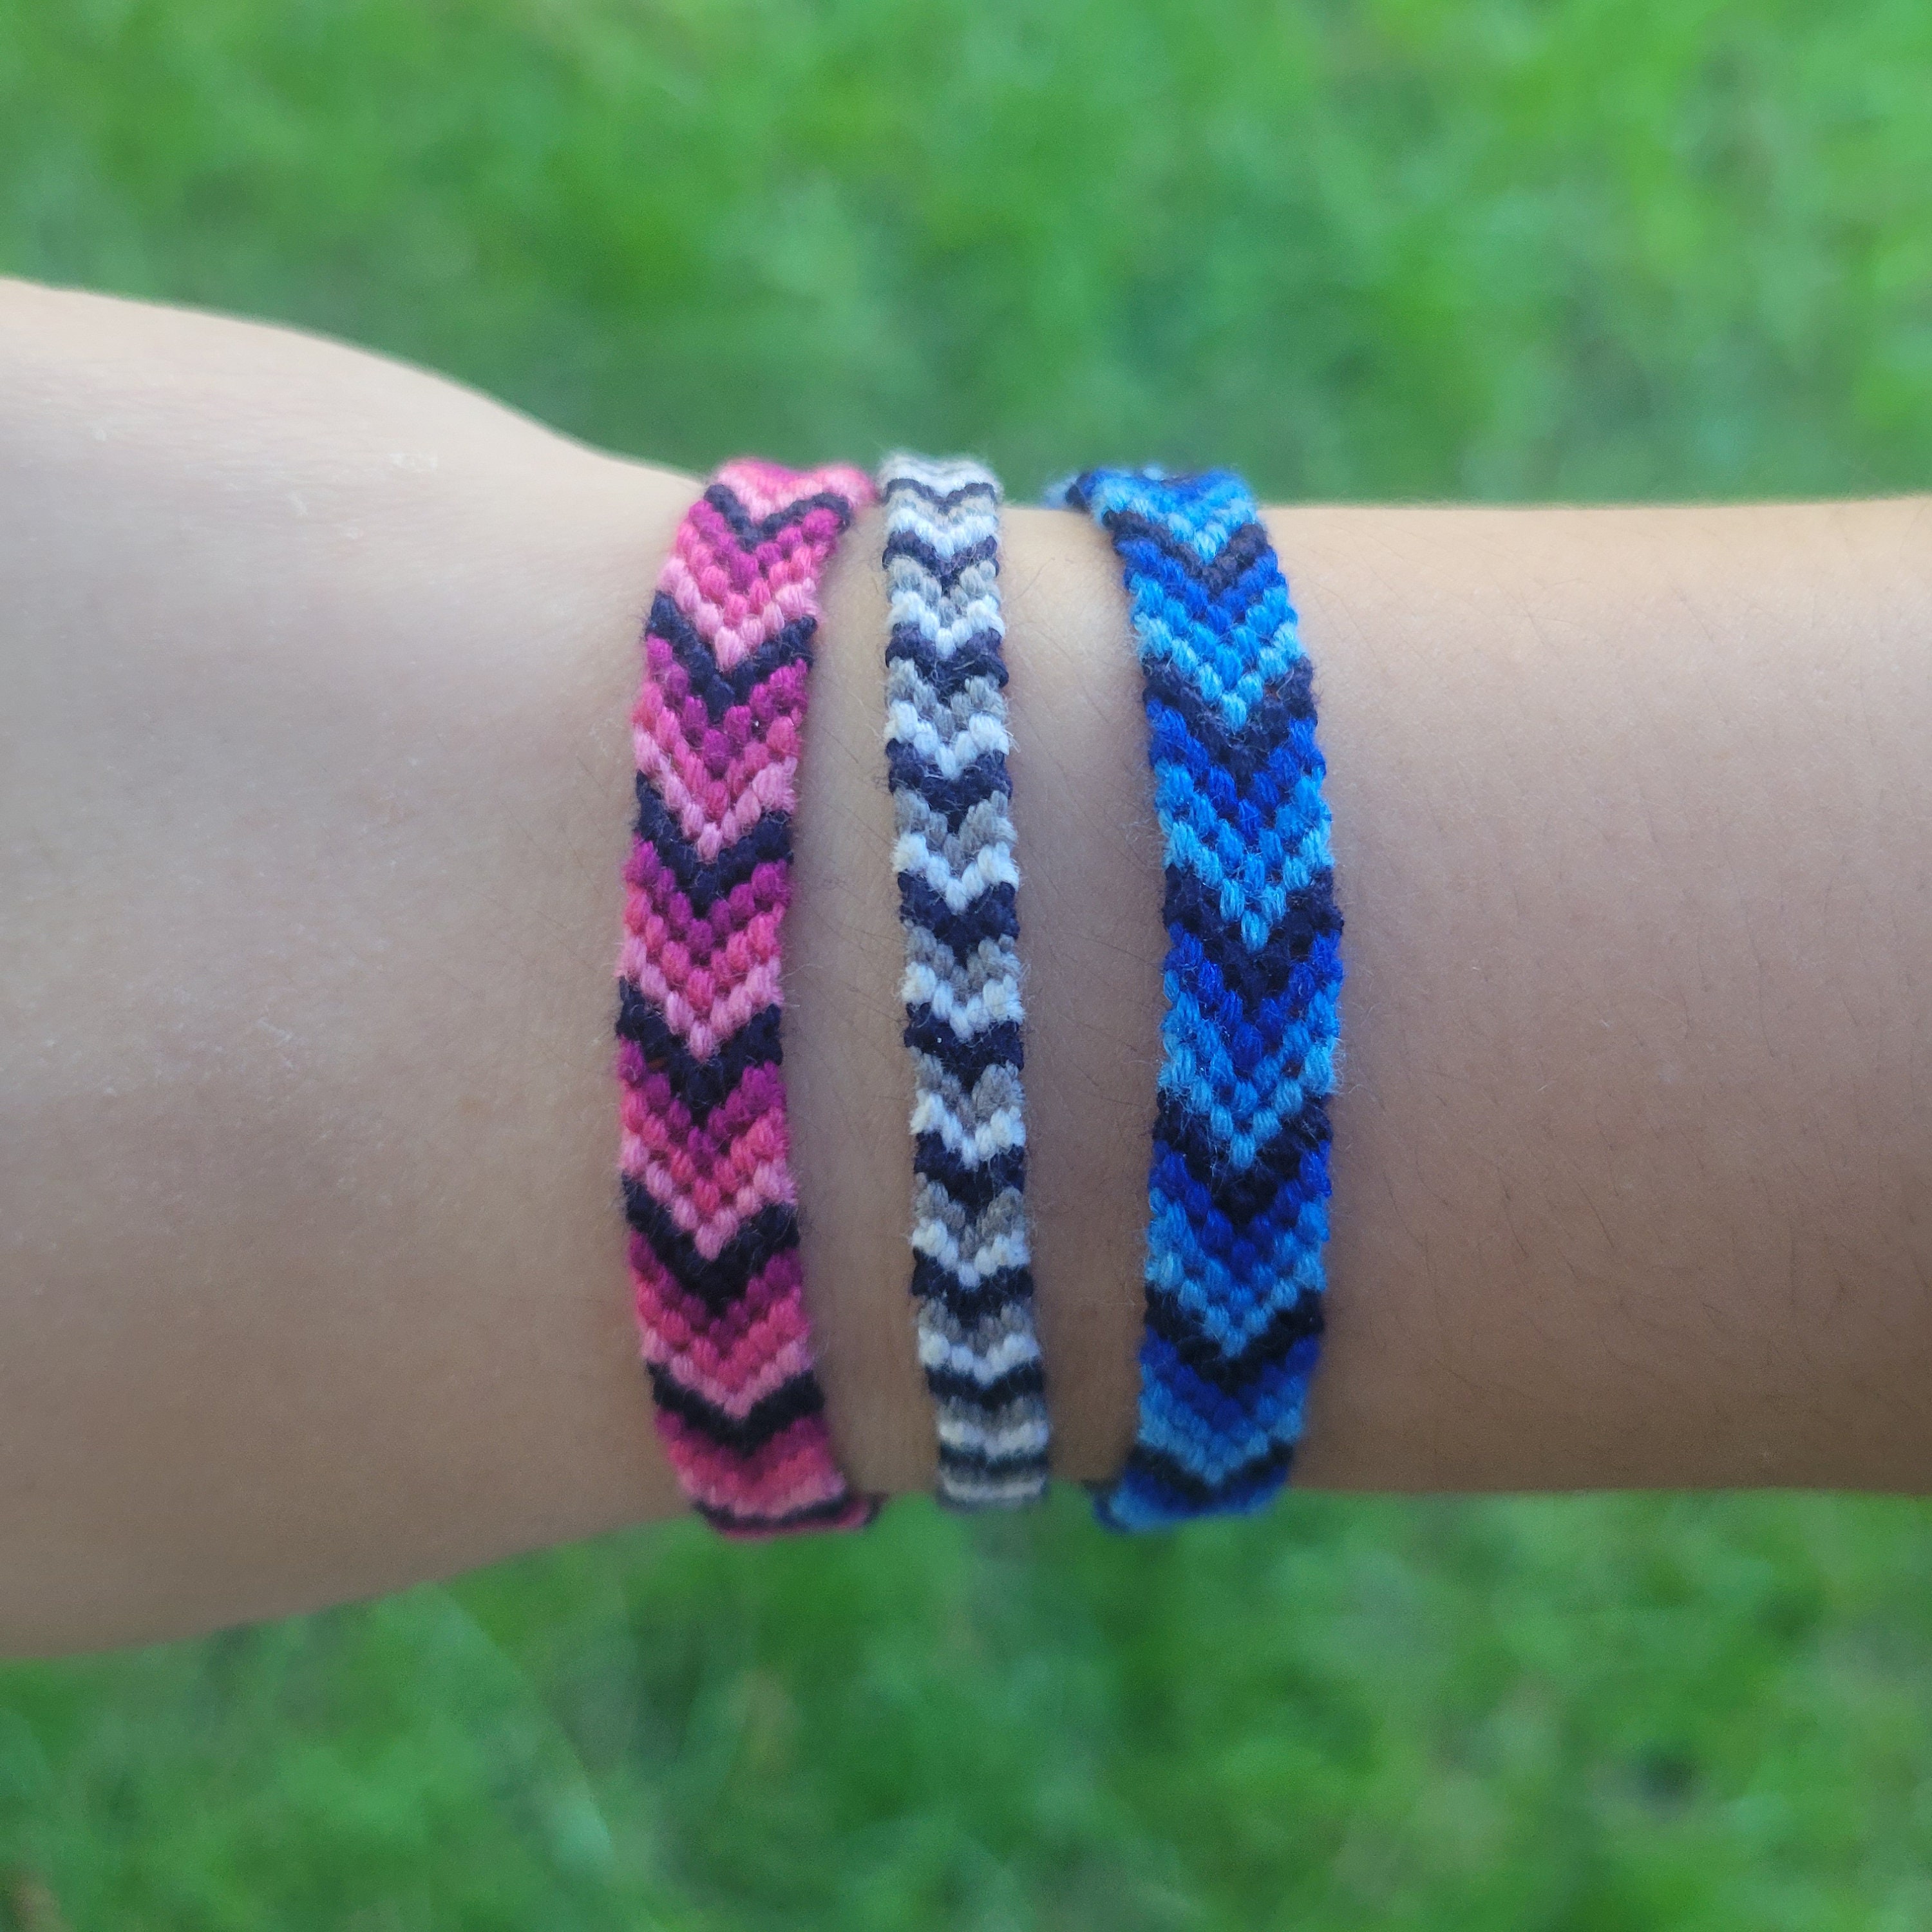 Share more than 75 custom woven friendship bracelets best - in.duhocakina